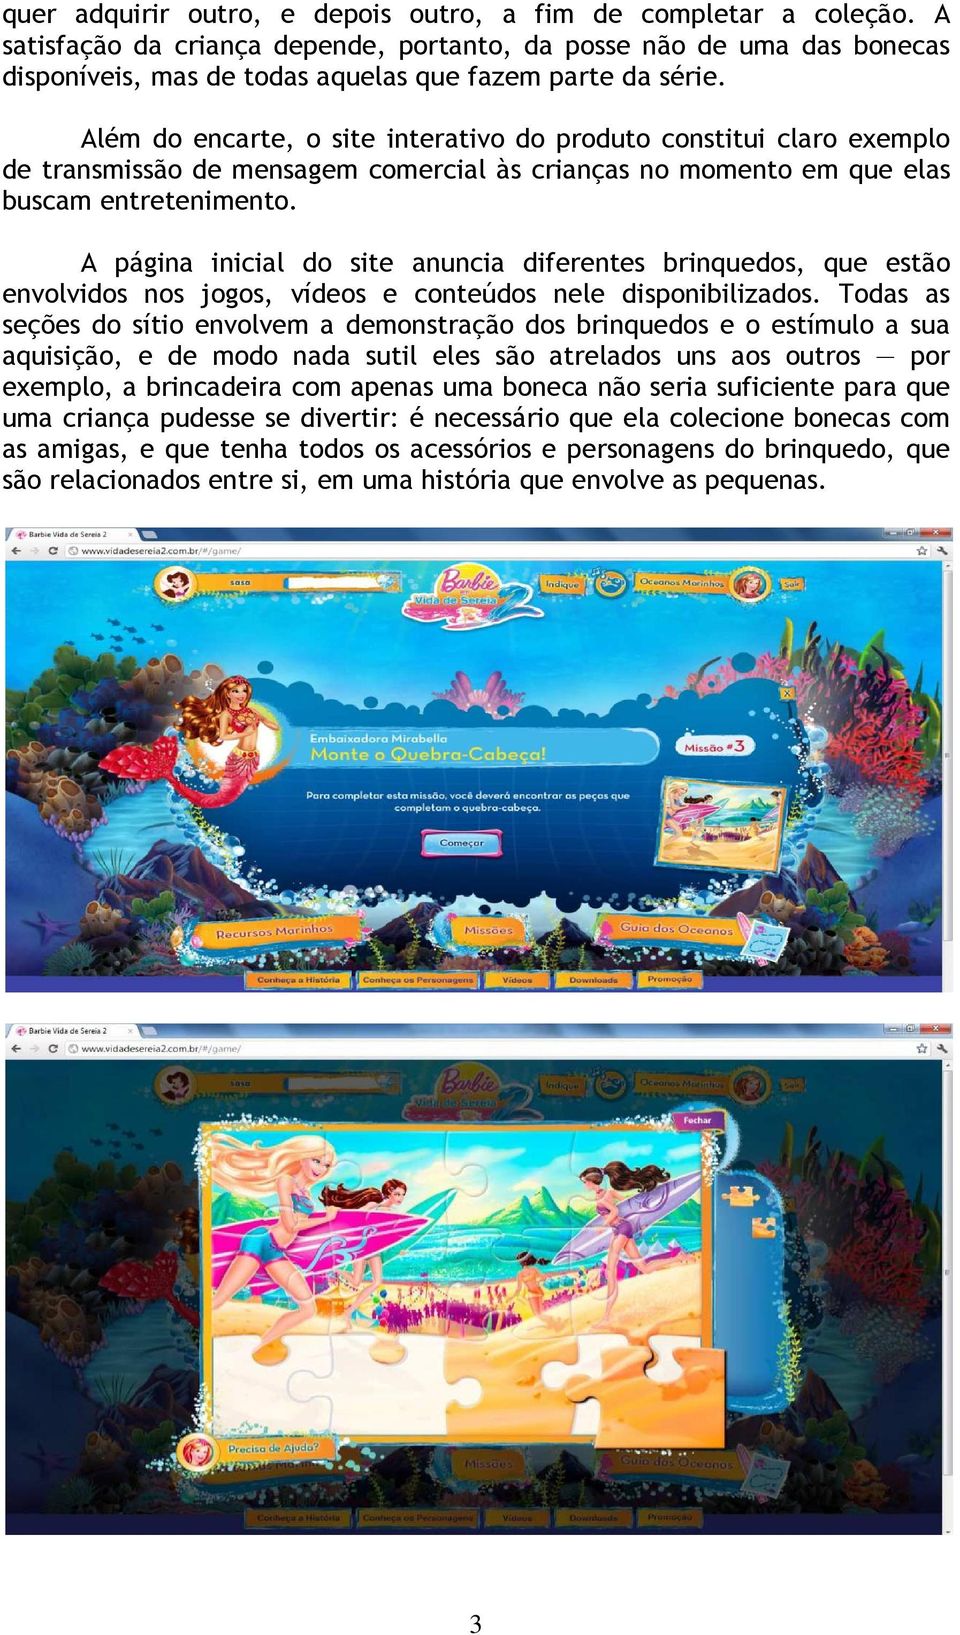 Além do encarte, o site interativo do produto constitui claro exemplo de transmissão de mensagem comercial às crianças no momento em que elas buscam entretenimento.